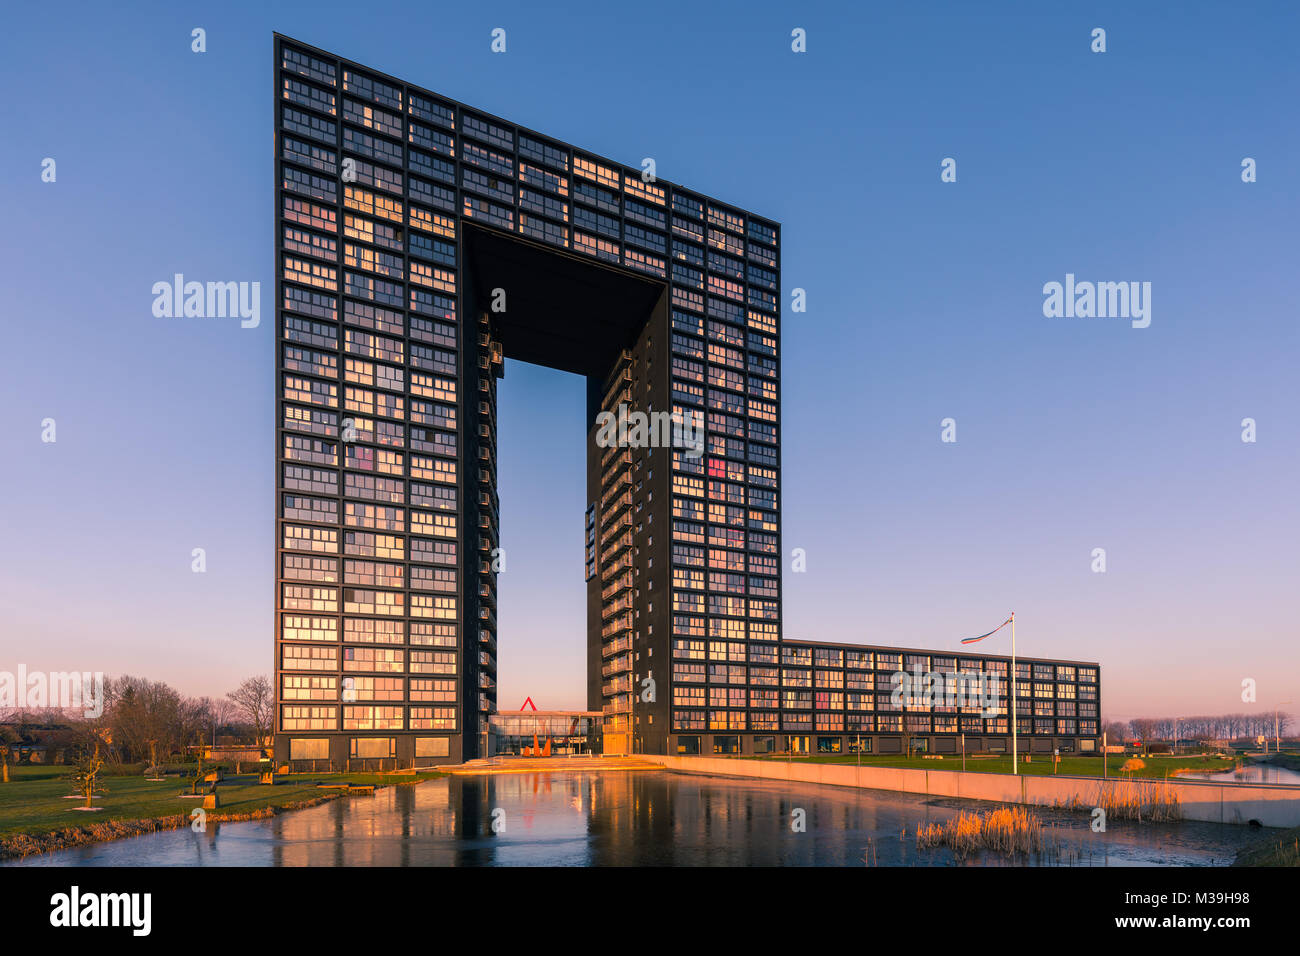 L'architecture néerlandaise moderne, la Tour de Tasmanie dans la ville de Groningen, Pays-Bas Banque D'Images